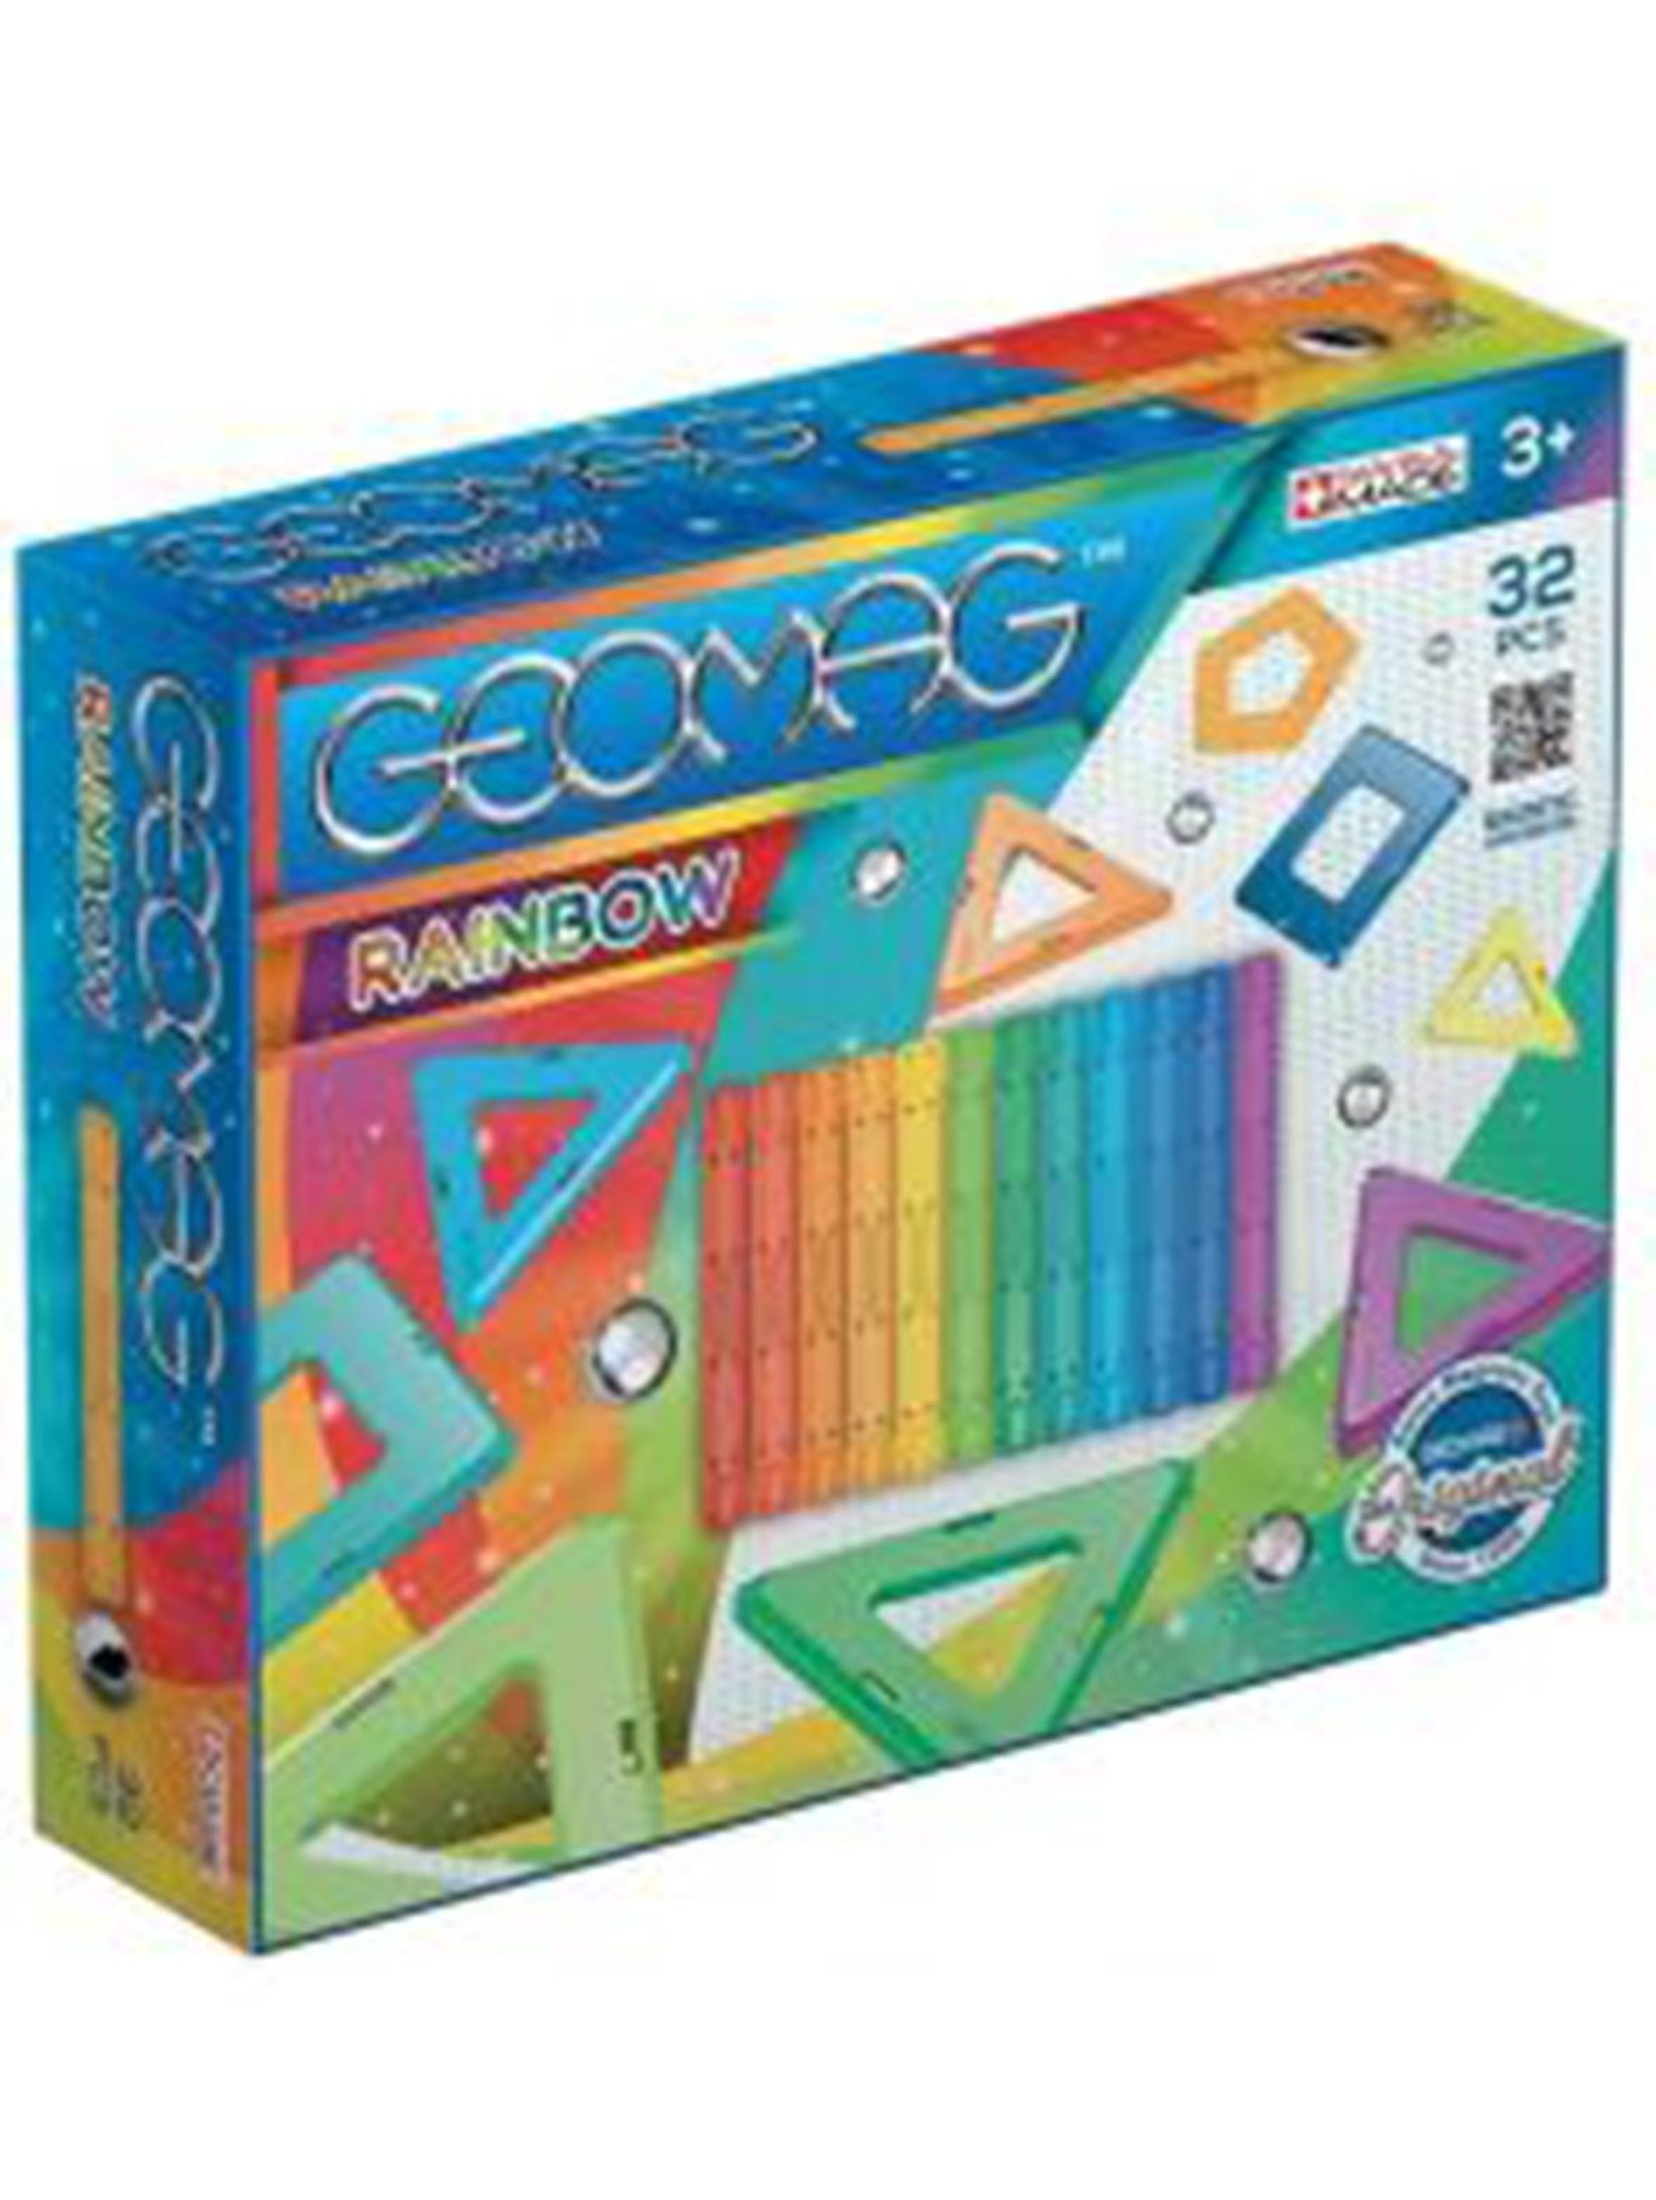 Geomag -  Klocki konstrukcyjne -  Rainbow Panels  - 32 elementy wiek 3+